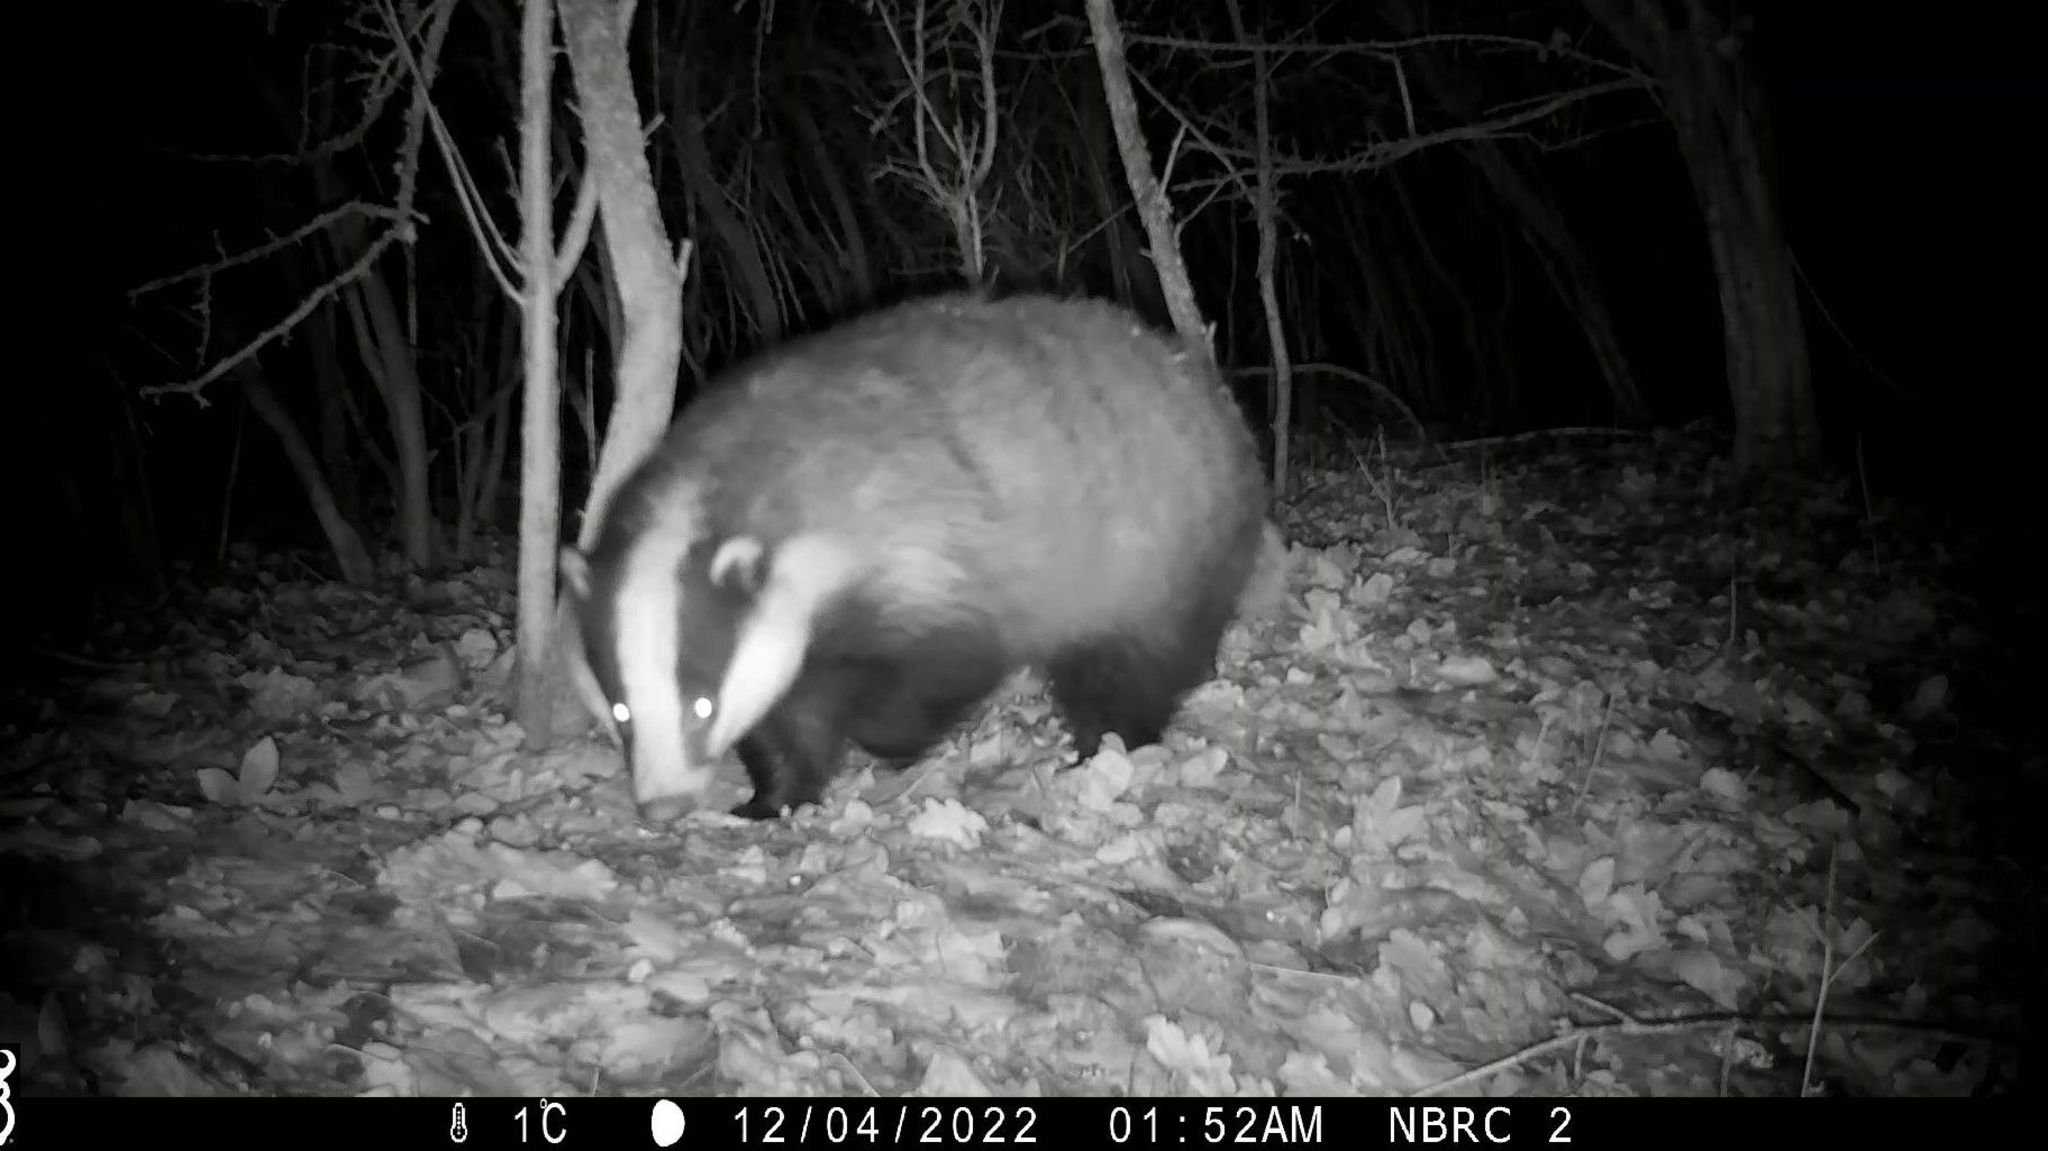 A badger on night camera